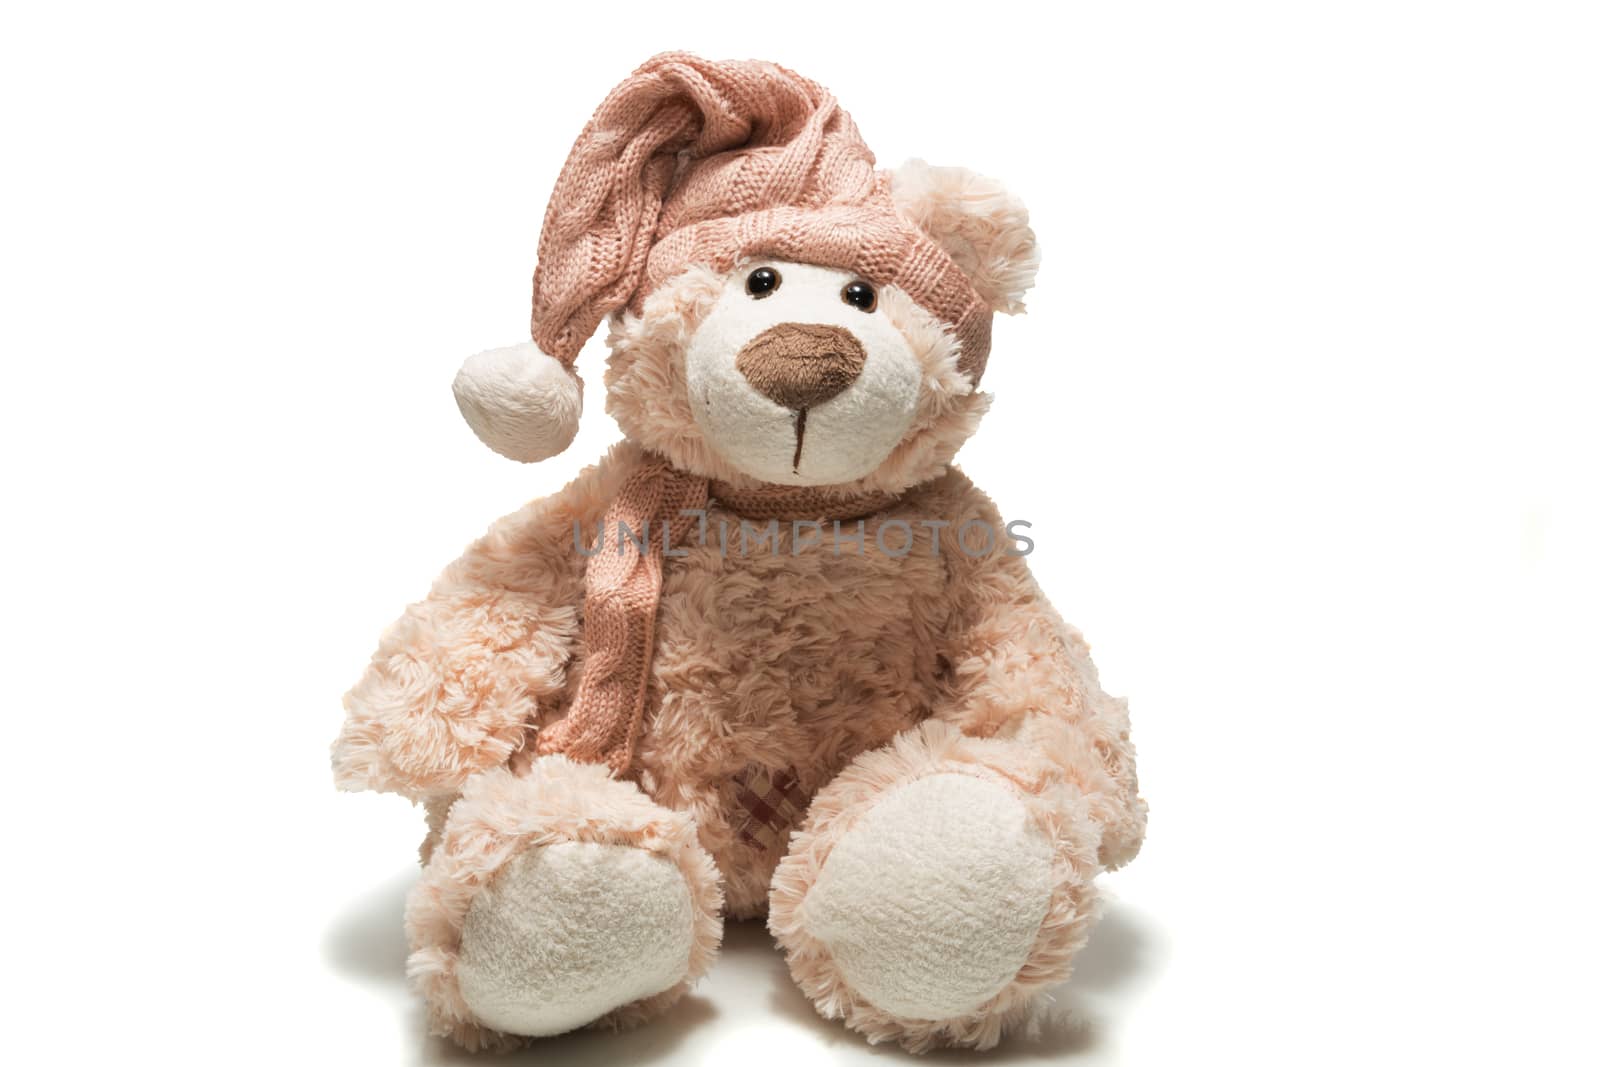 teddy bear in a cap by AlexBush